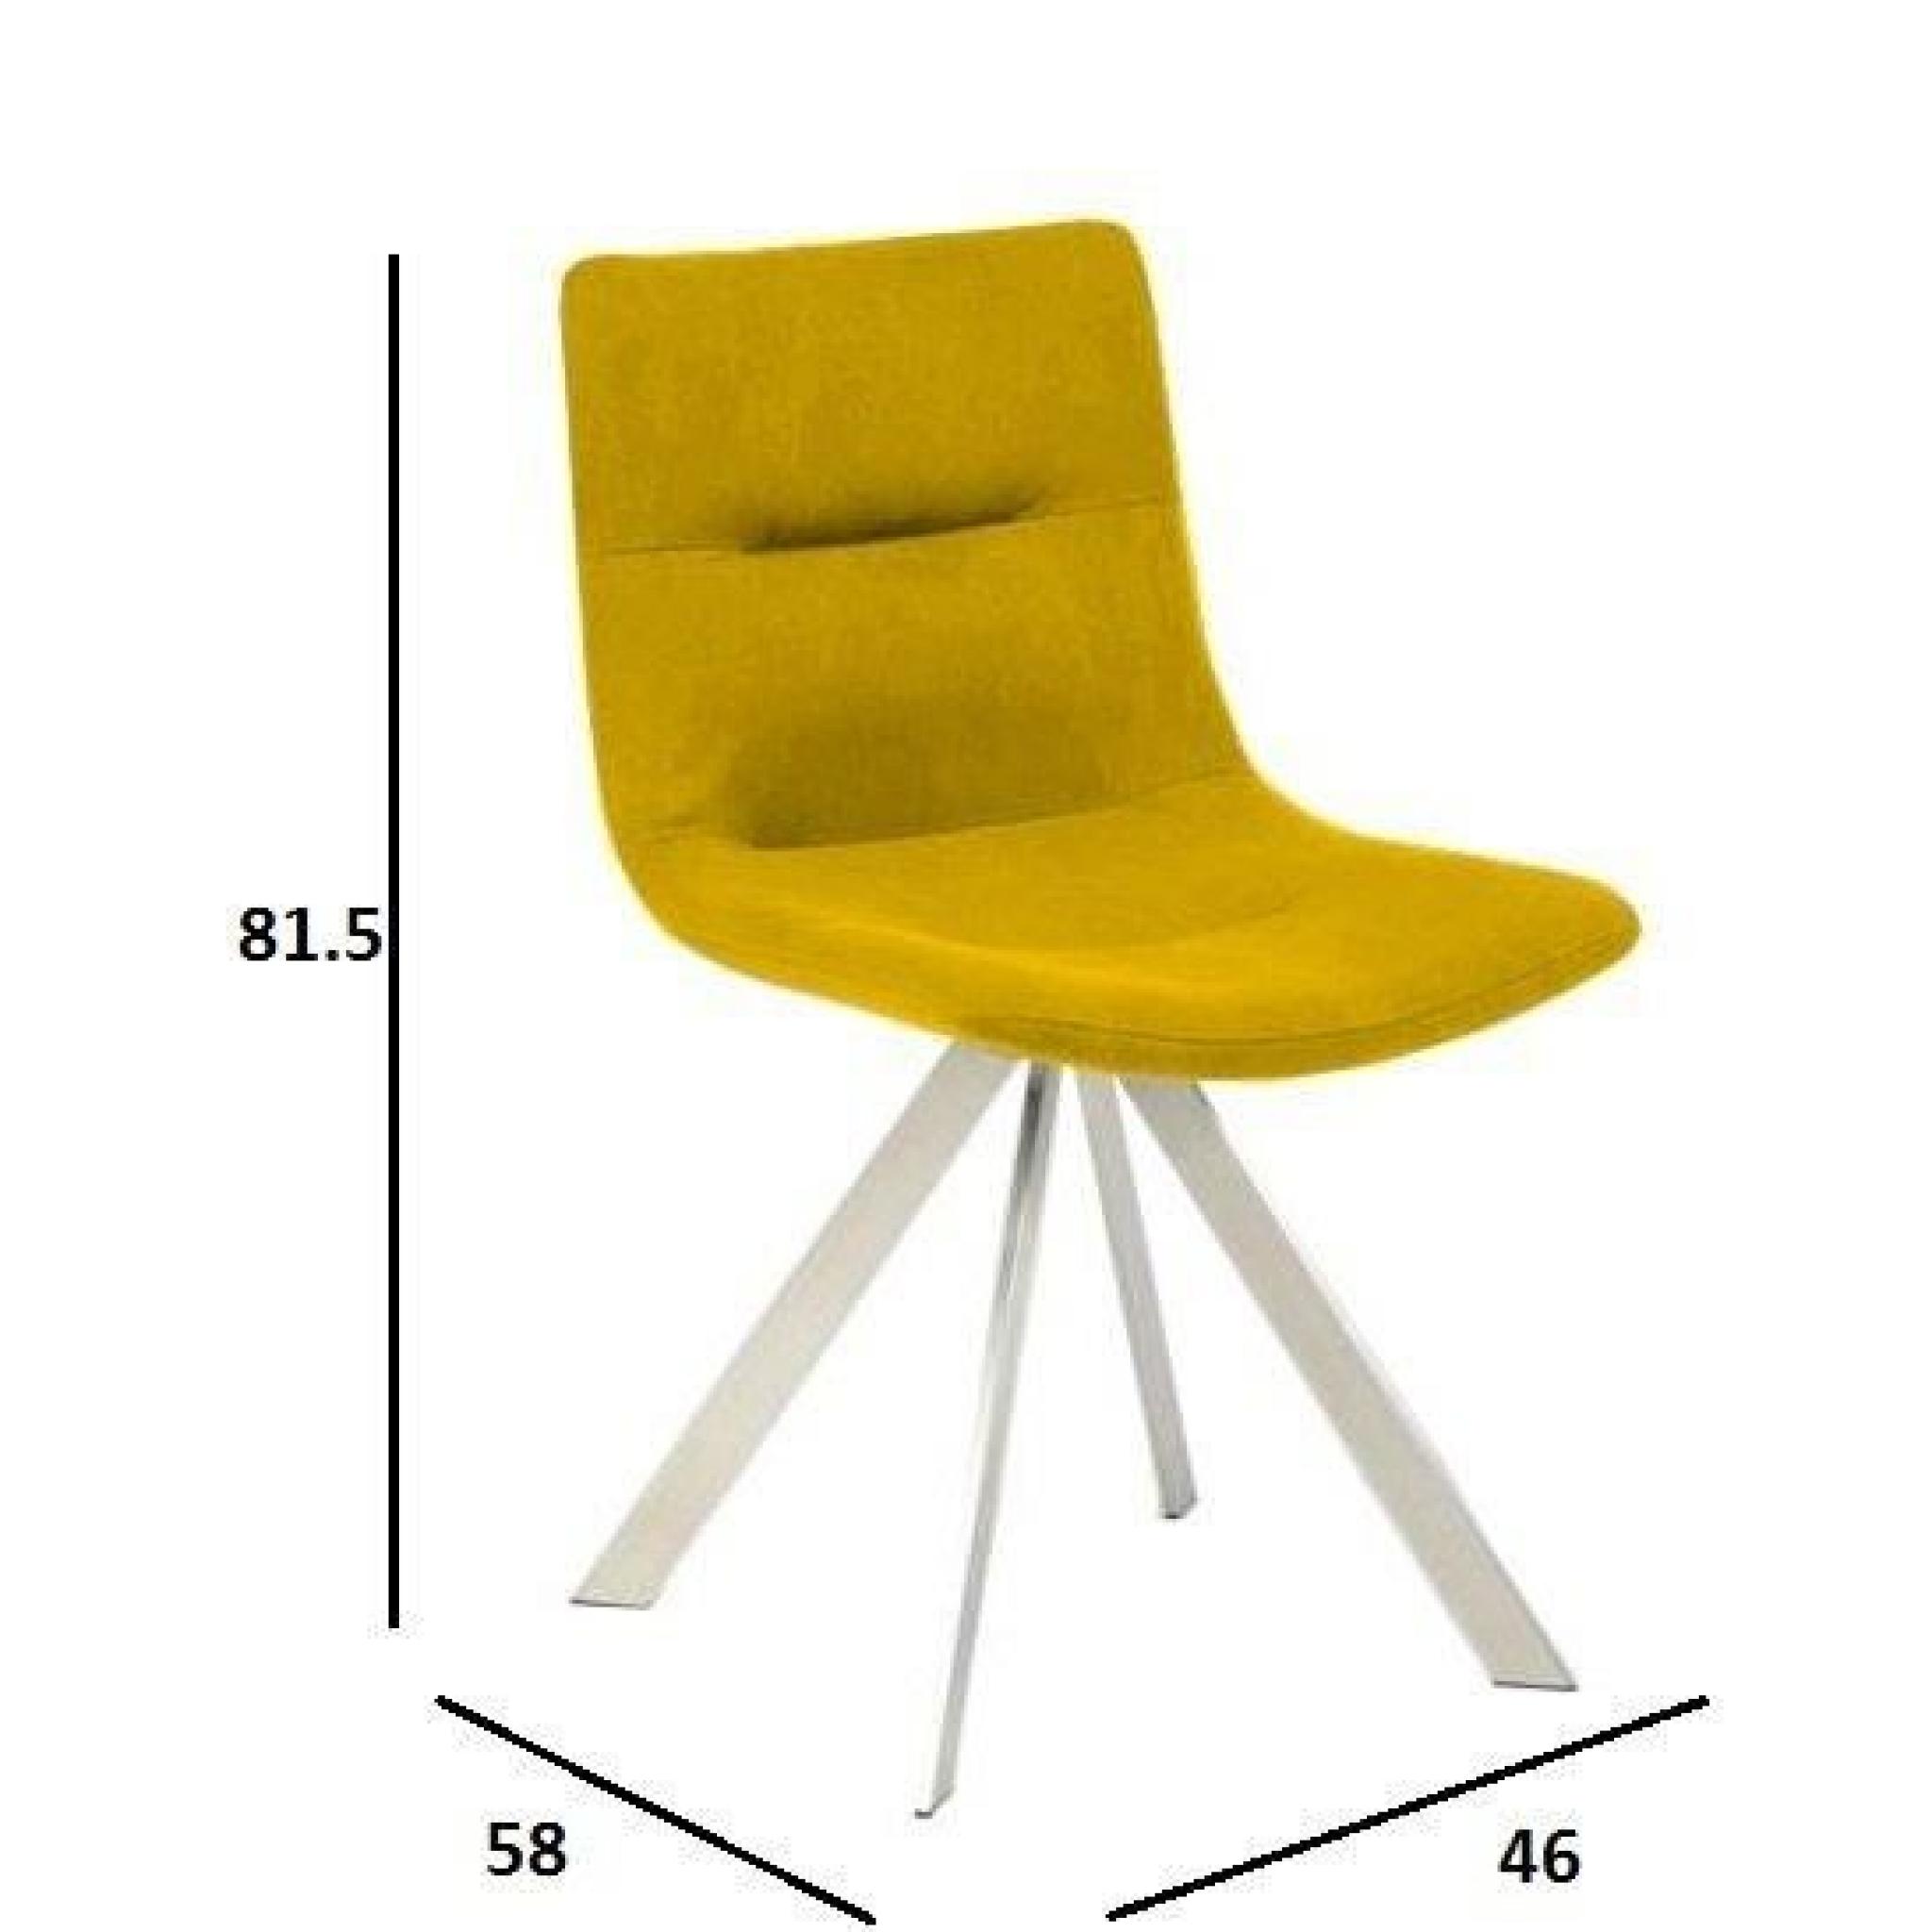 La chaise PIRATE vous permettra de rester assis des heures durant. Son design à la fois originale et moderne lui permettra de s'i... pas cher